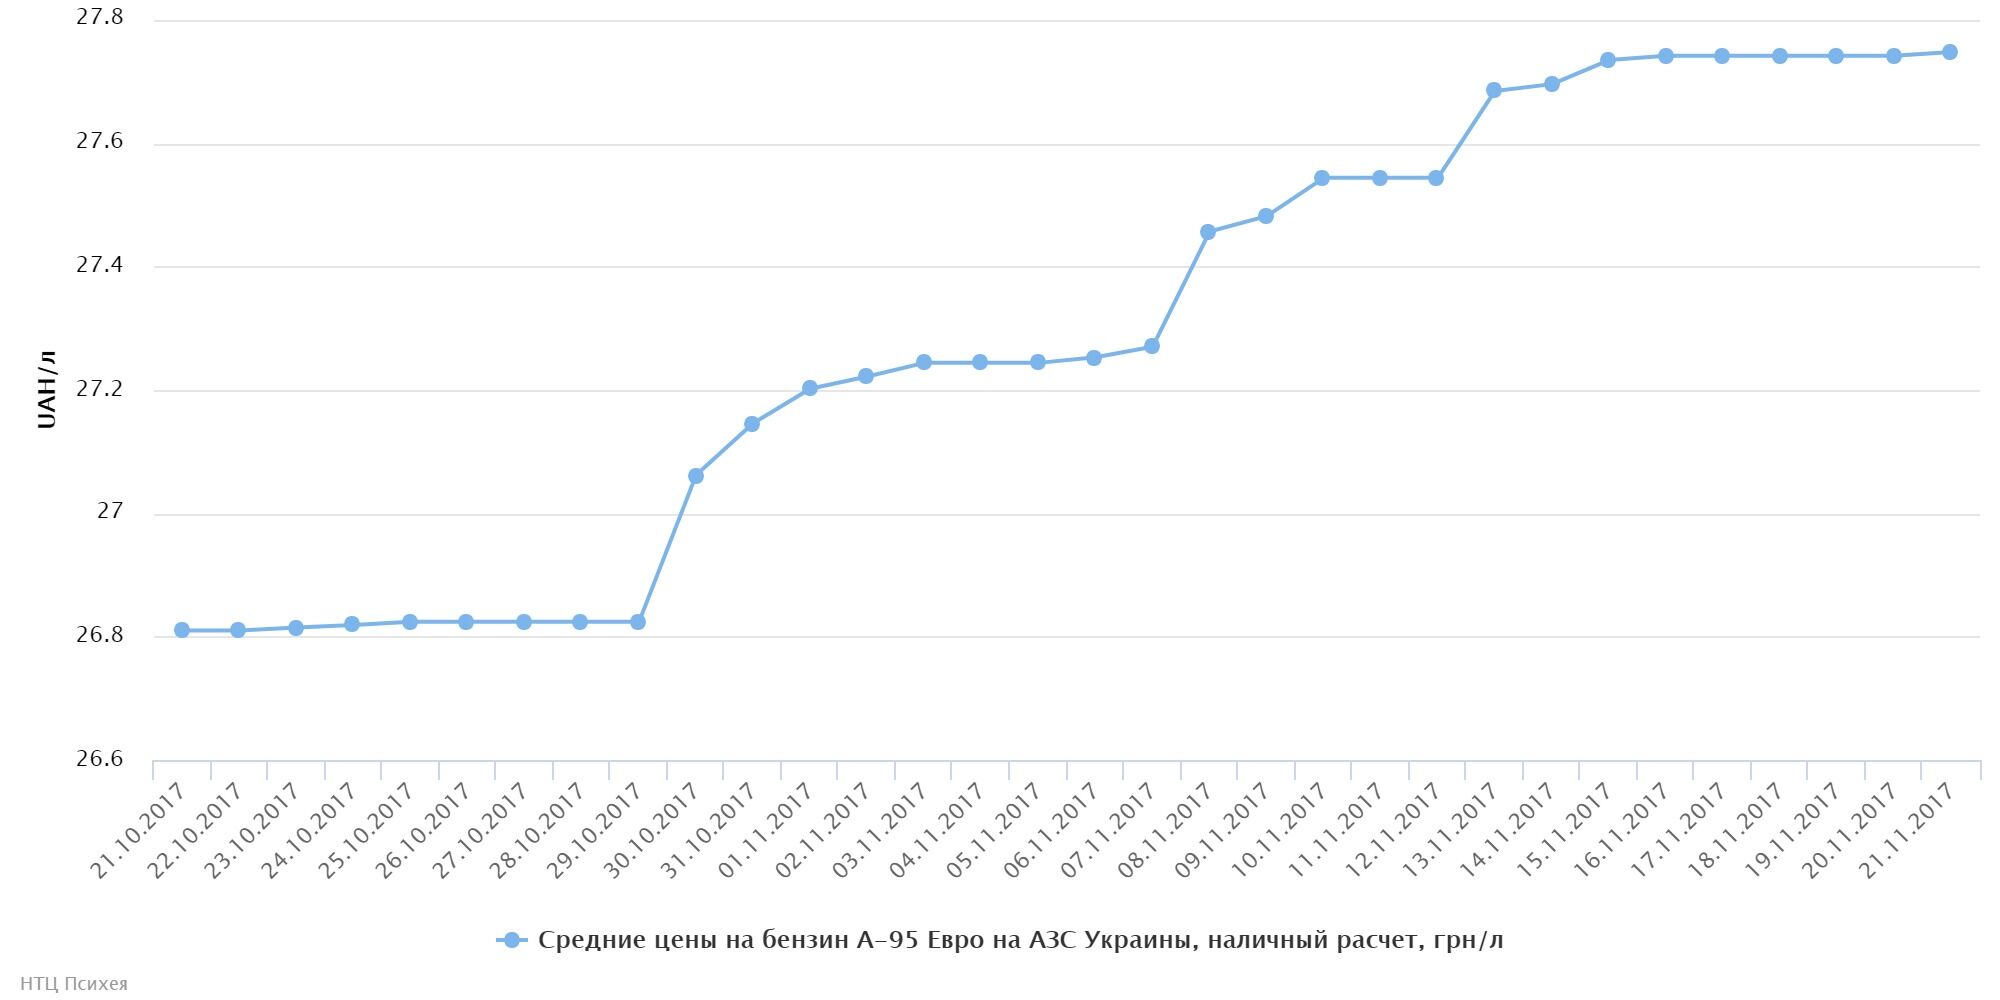 Средняя розничная цена на бензин А-95 Евро на украинских заправках по данным PsycheaFUEL